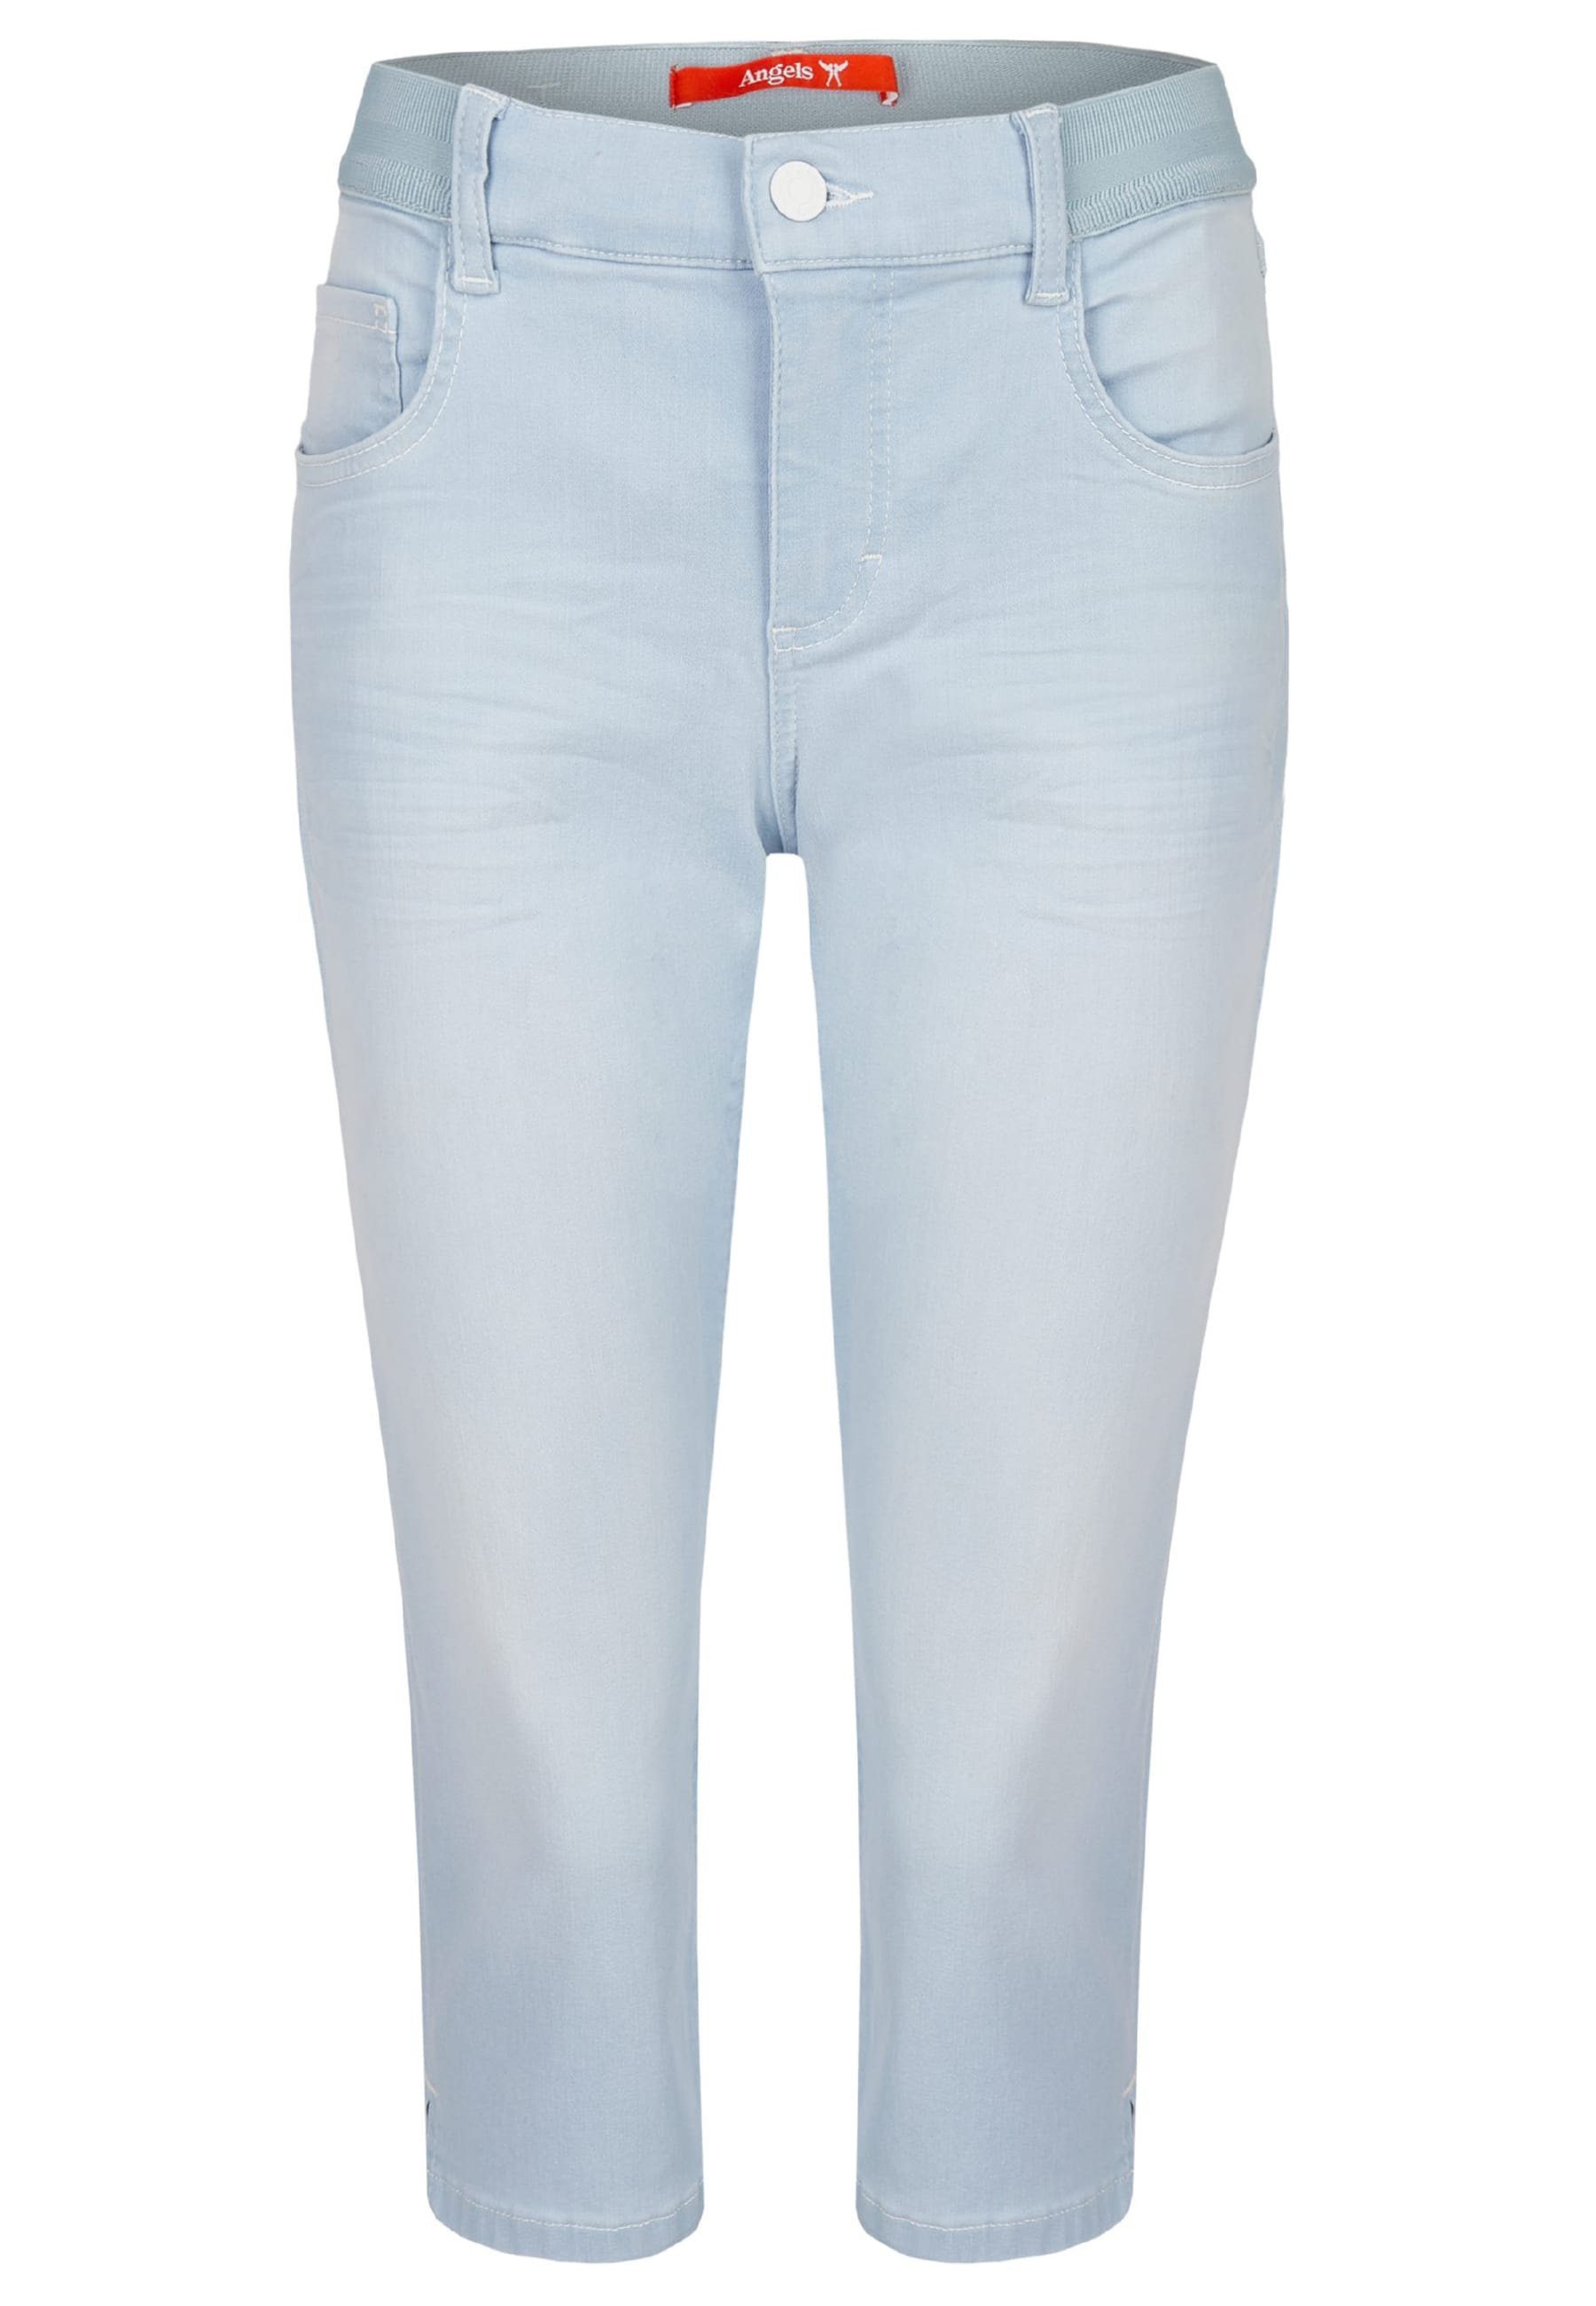 Capri Onesize mit Kurze Jeans ANGELS hellblau Dehnbund-Jeans klassischem Design